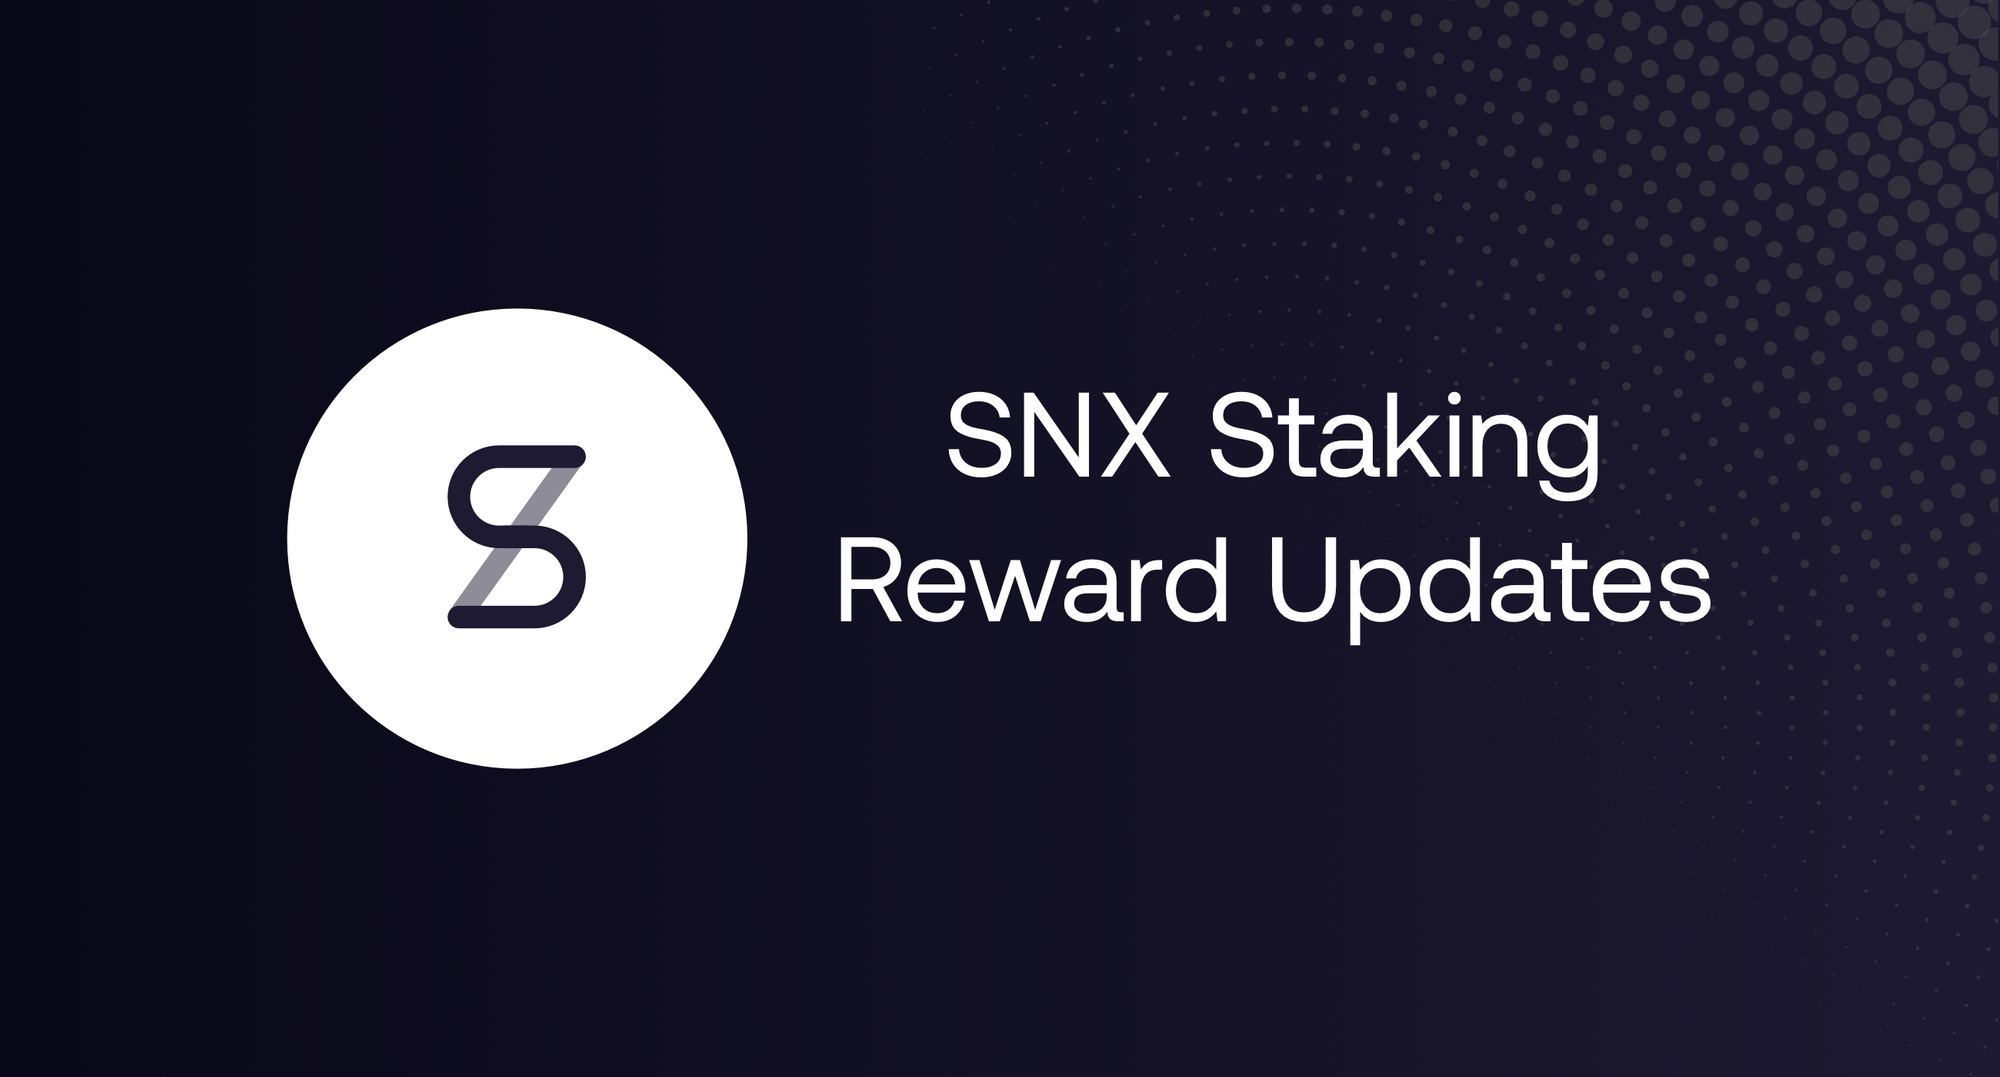 SNX Staking Reward Updates